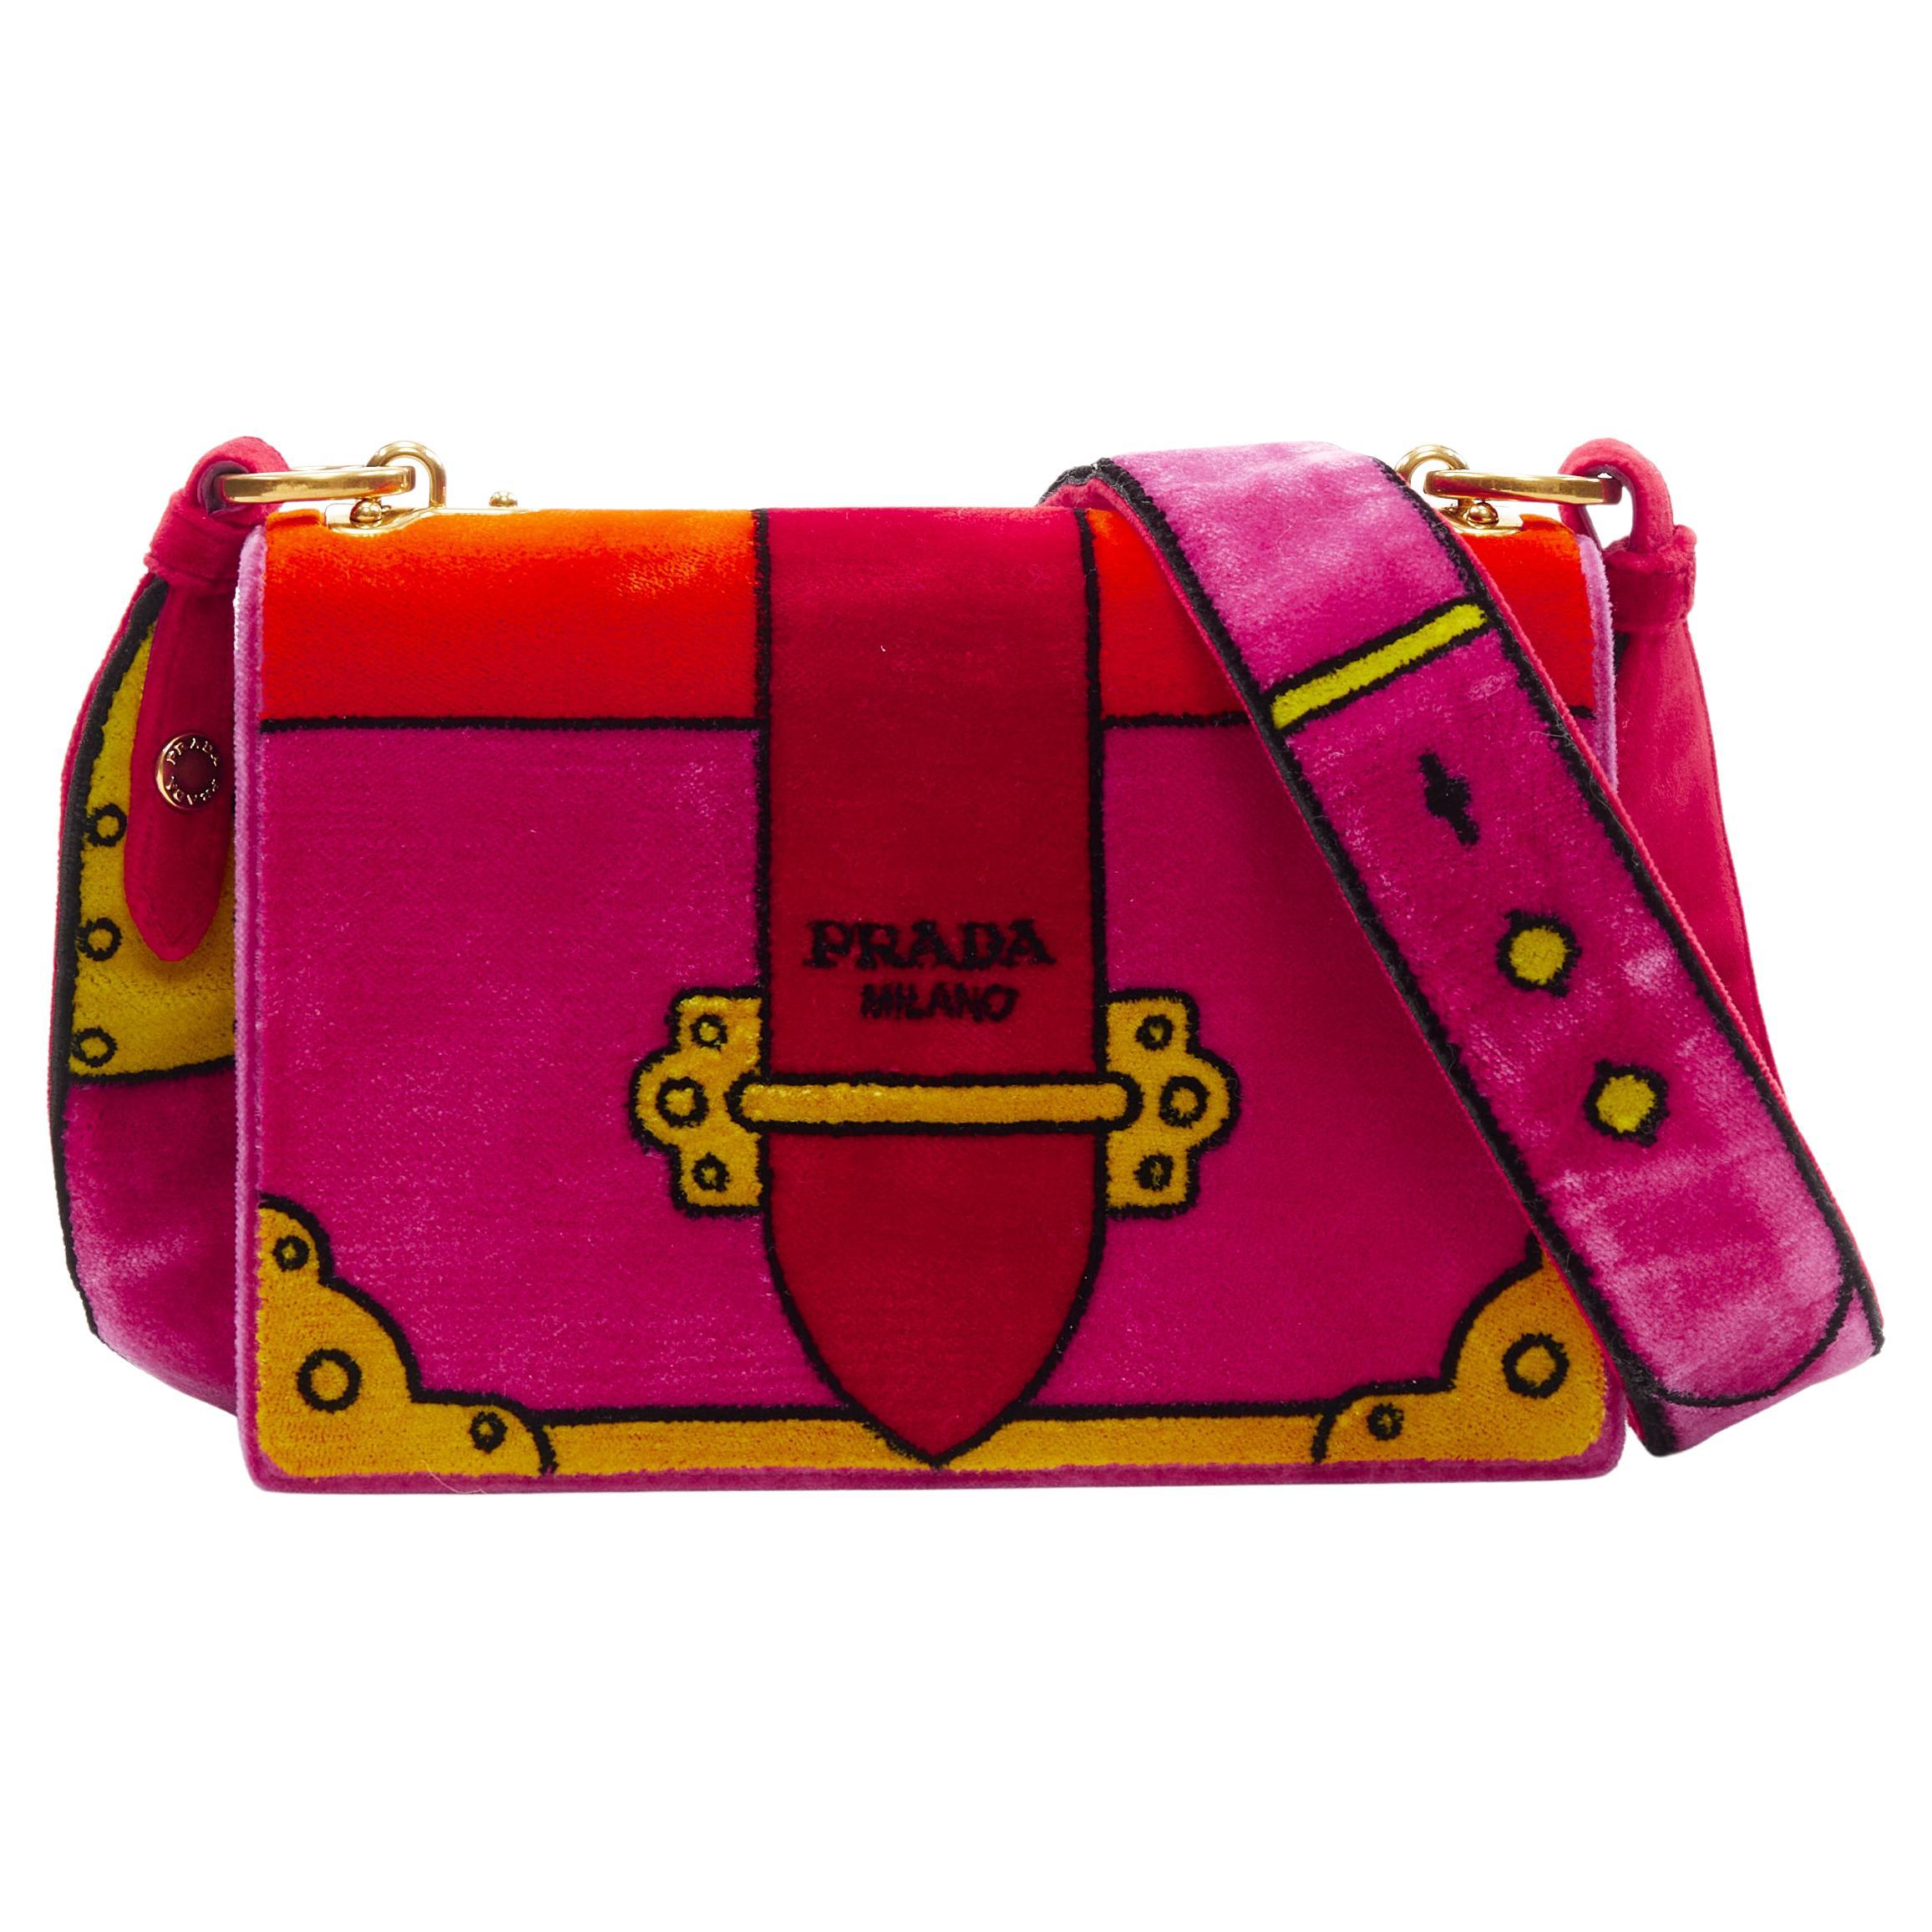 10 Prada cahier bag ideas  prada cahier bag, prada, street style